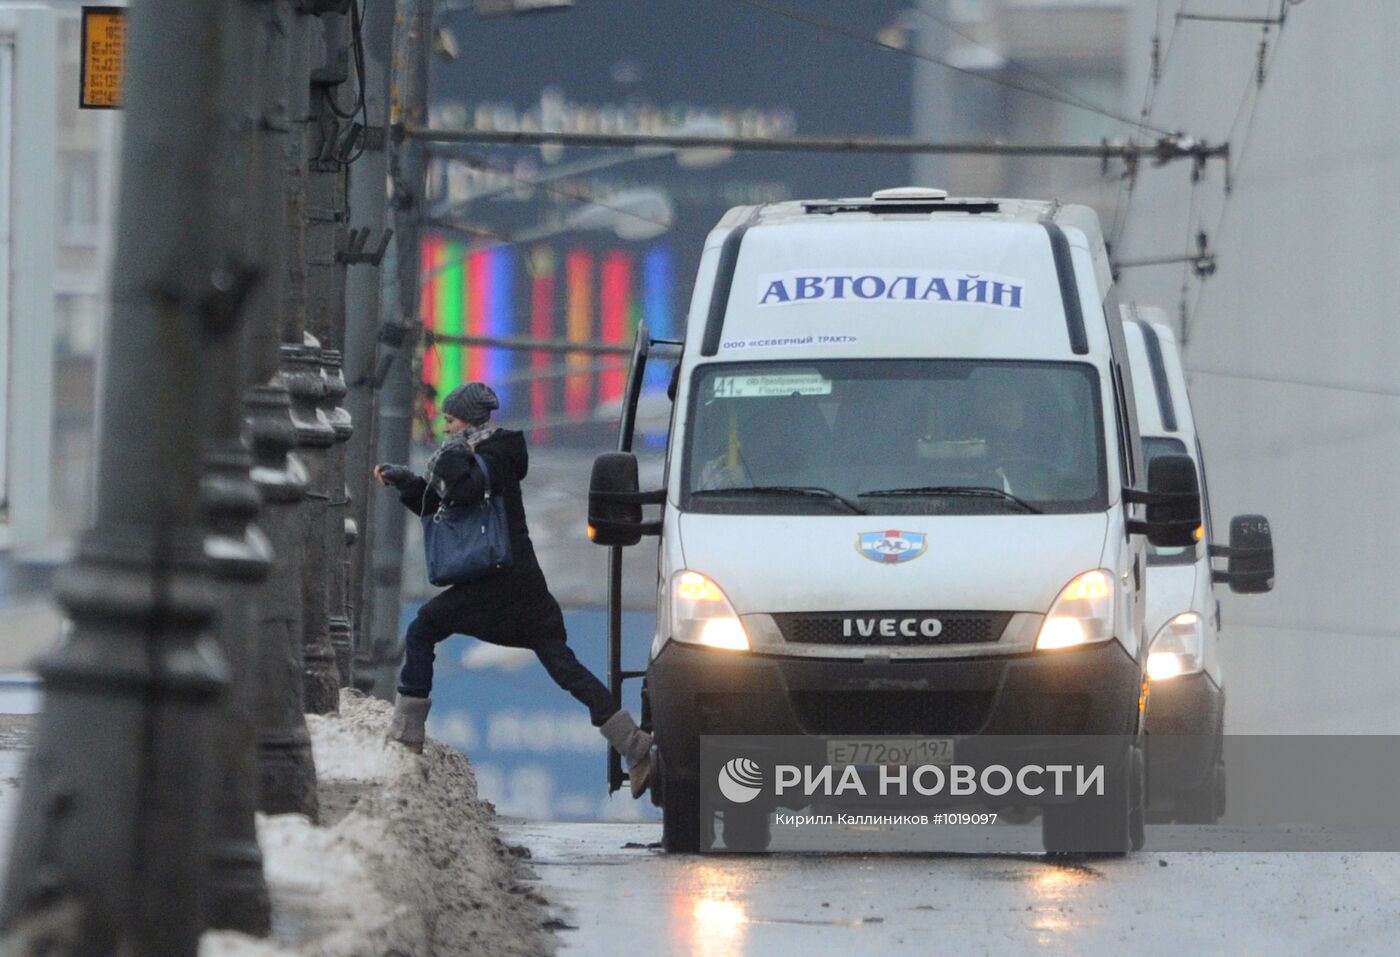 Маршрутные такси в Москве